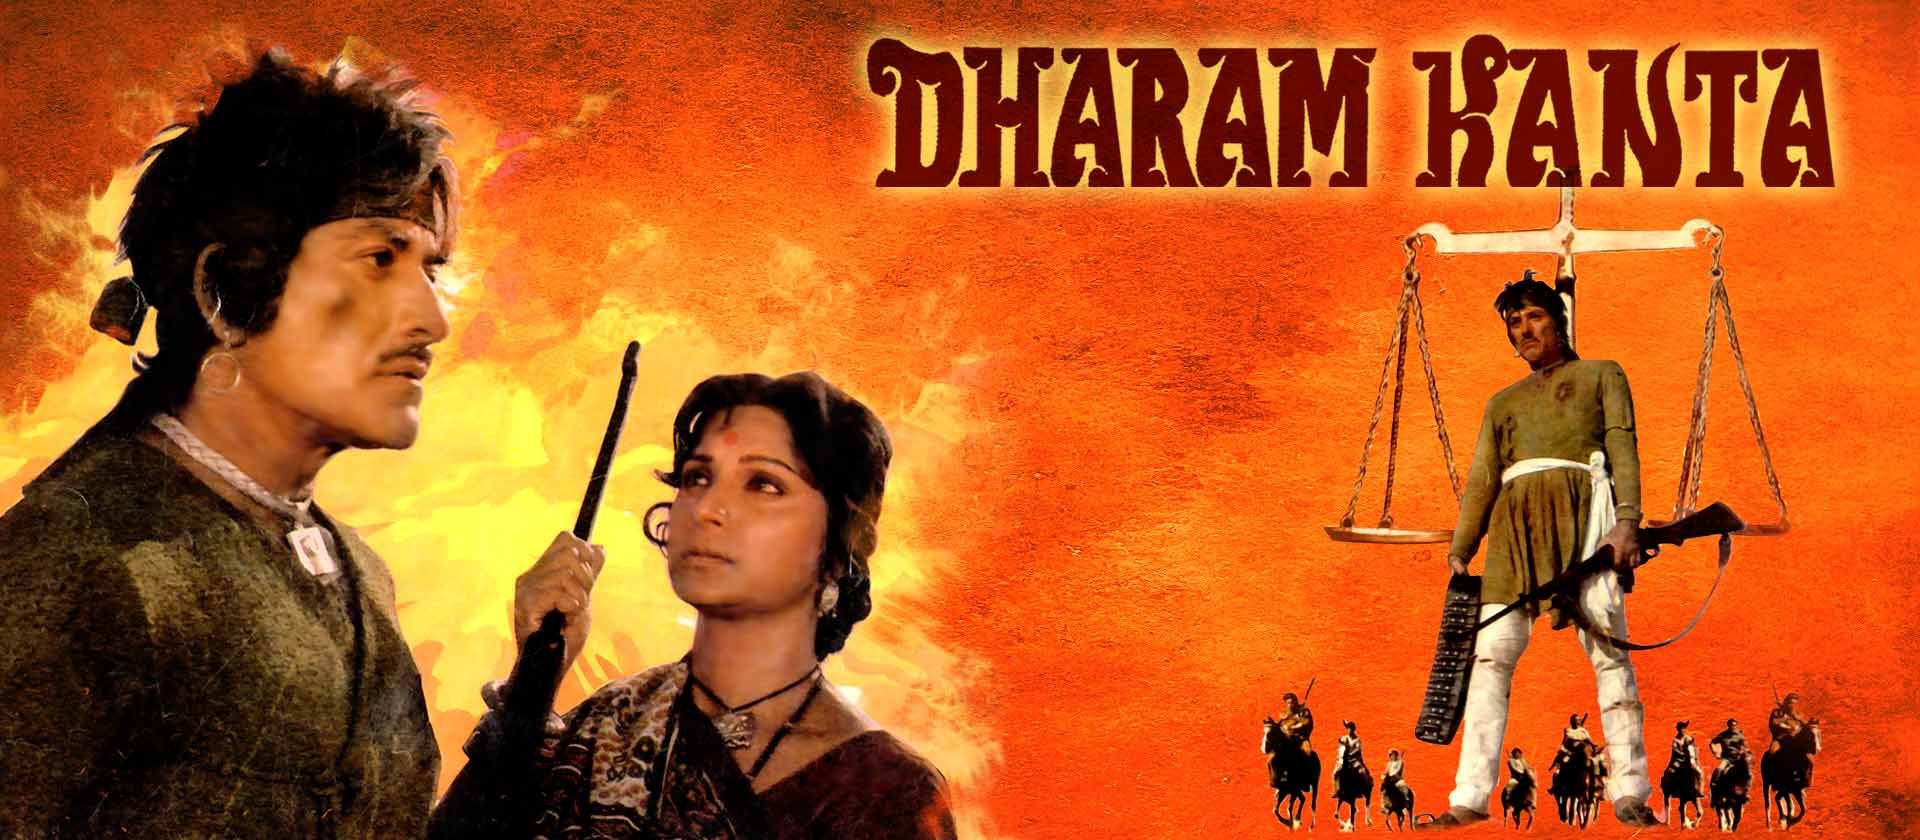 Dharam Kanta